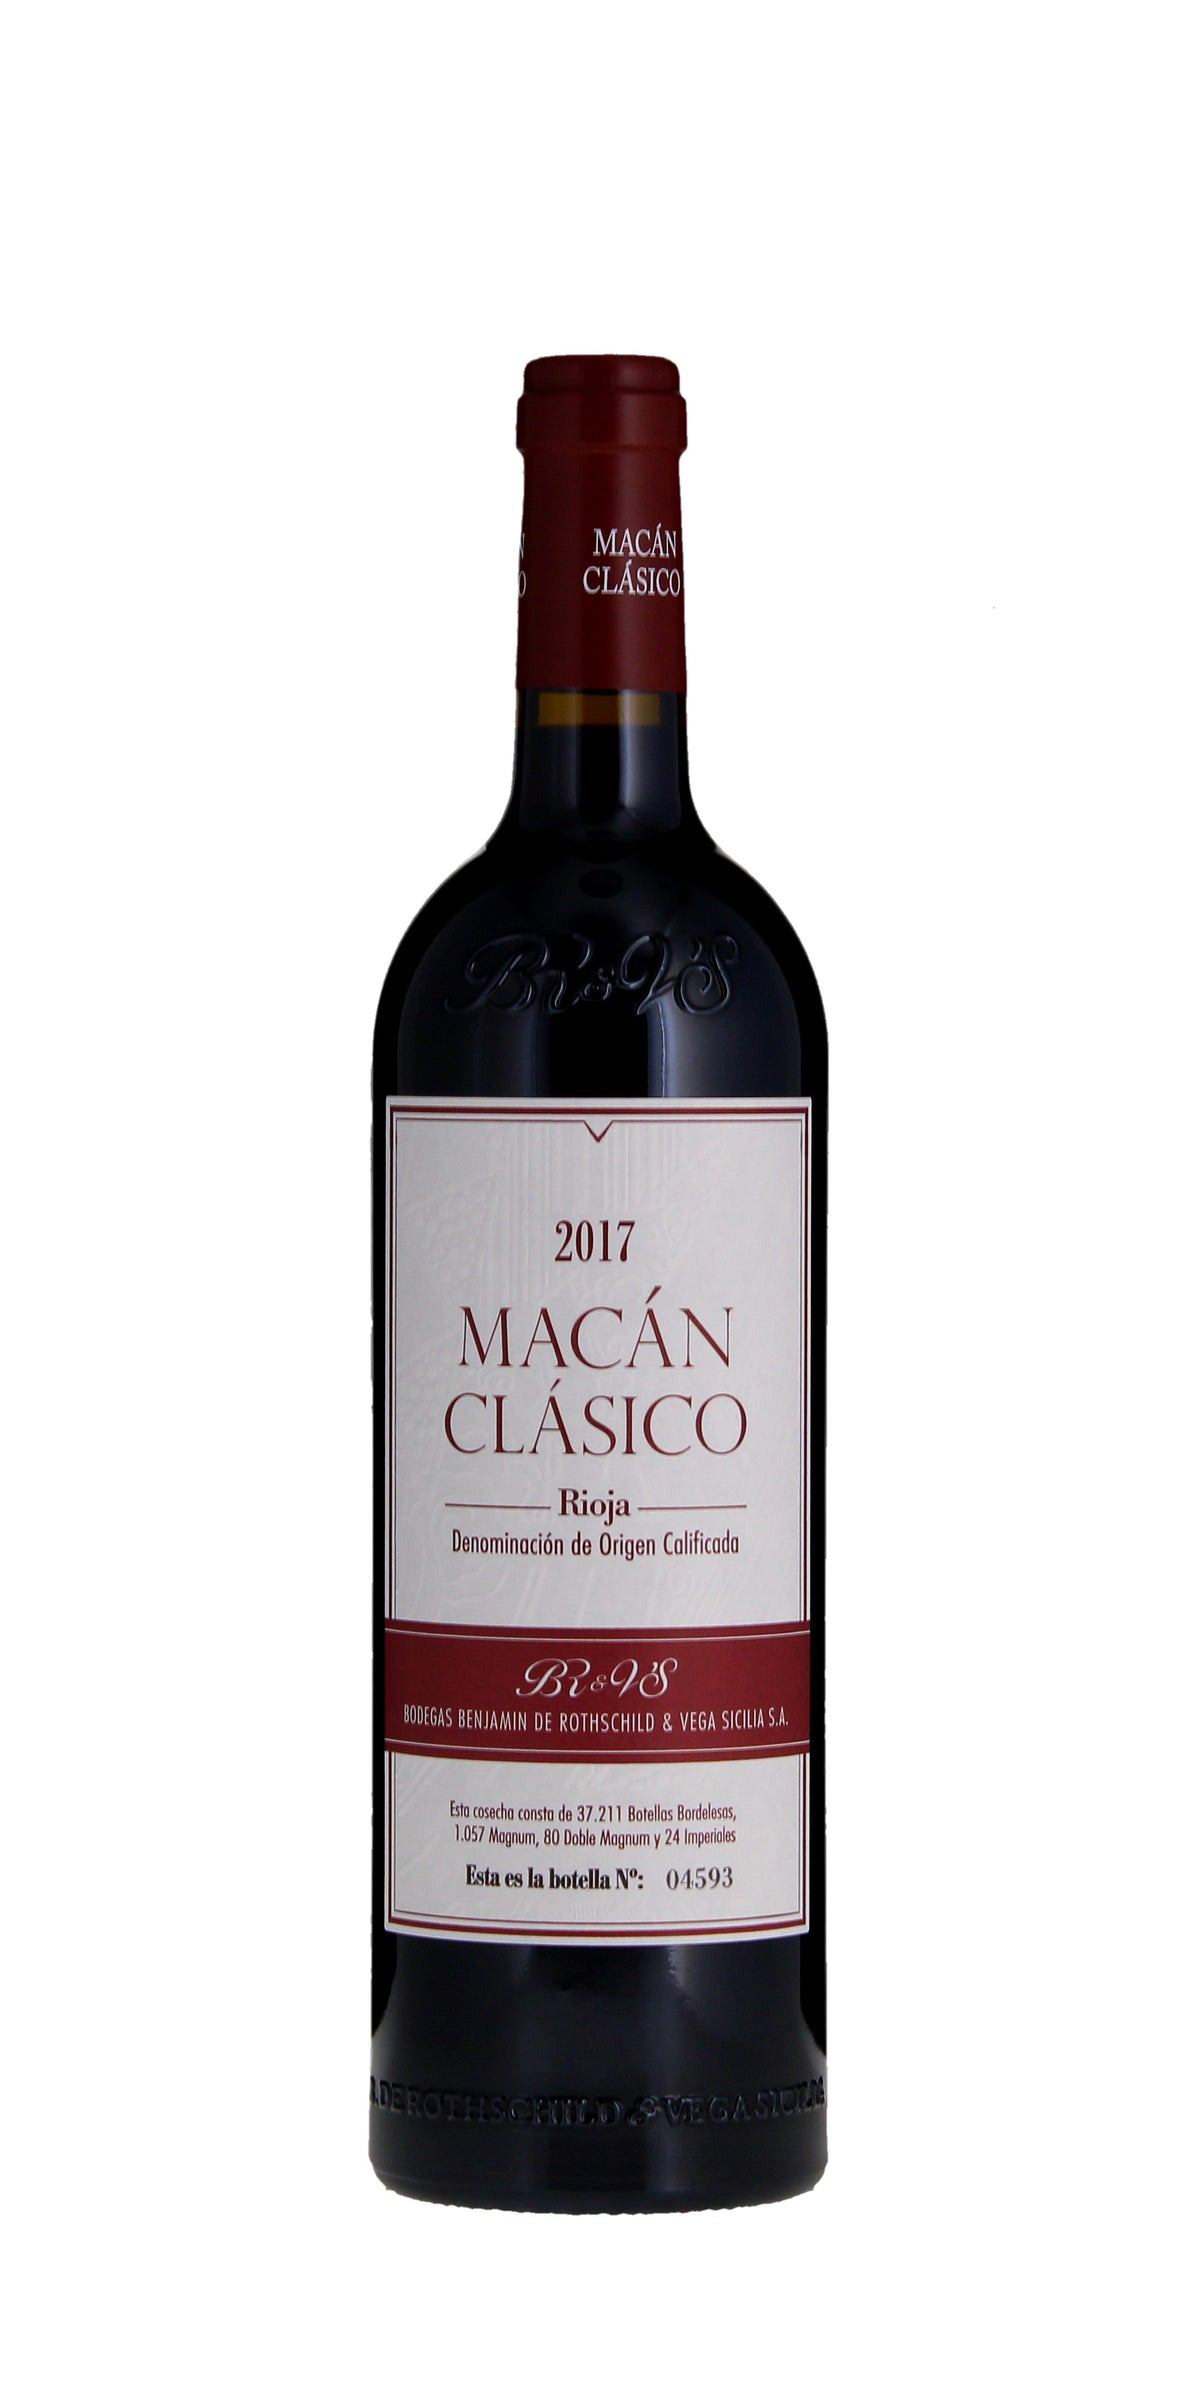 Rothschild & Vega Sicilia, Macan Classico, Rioja, 2017